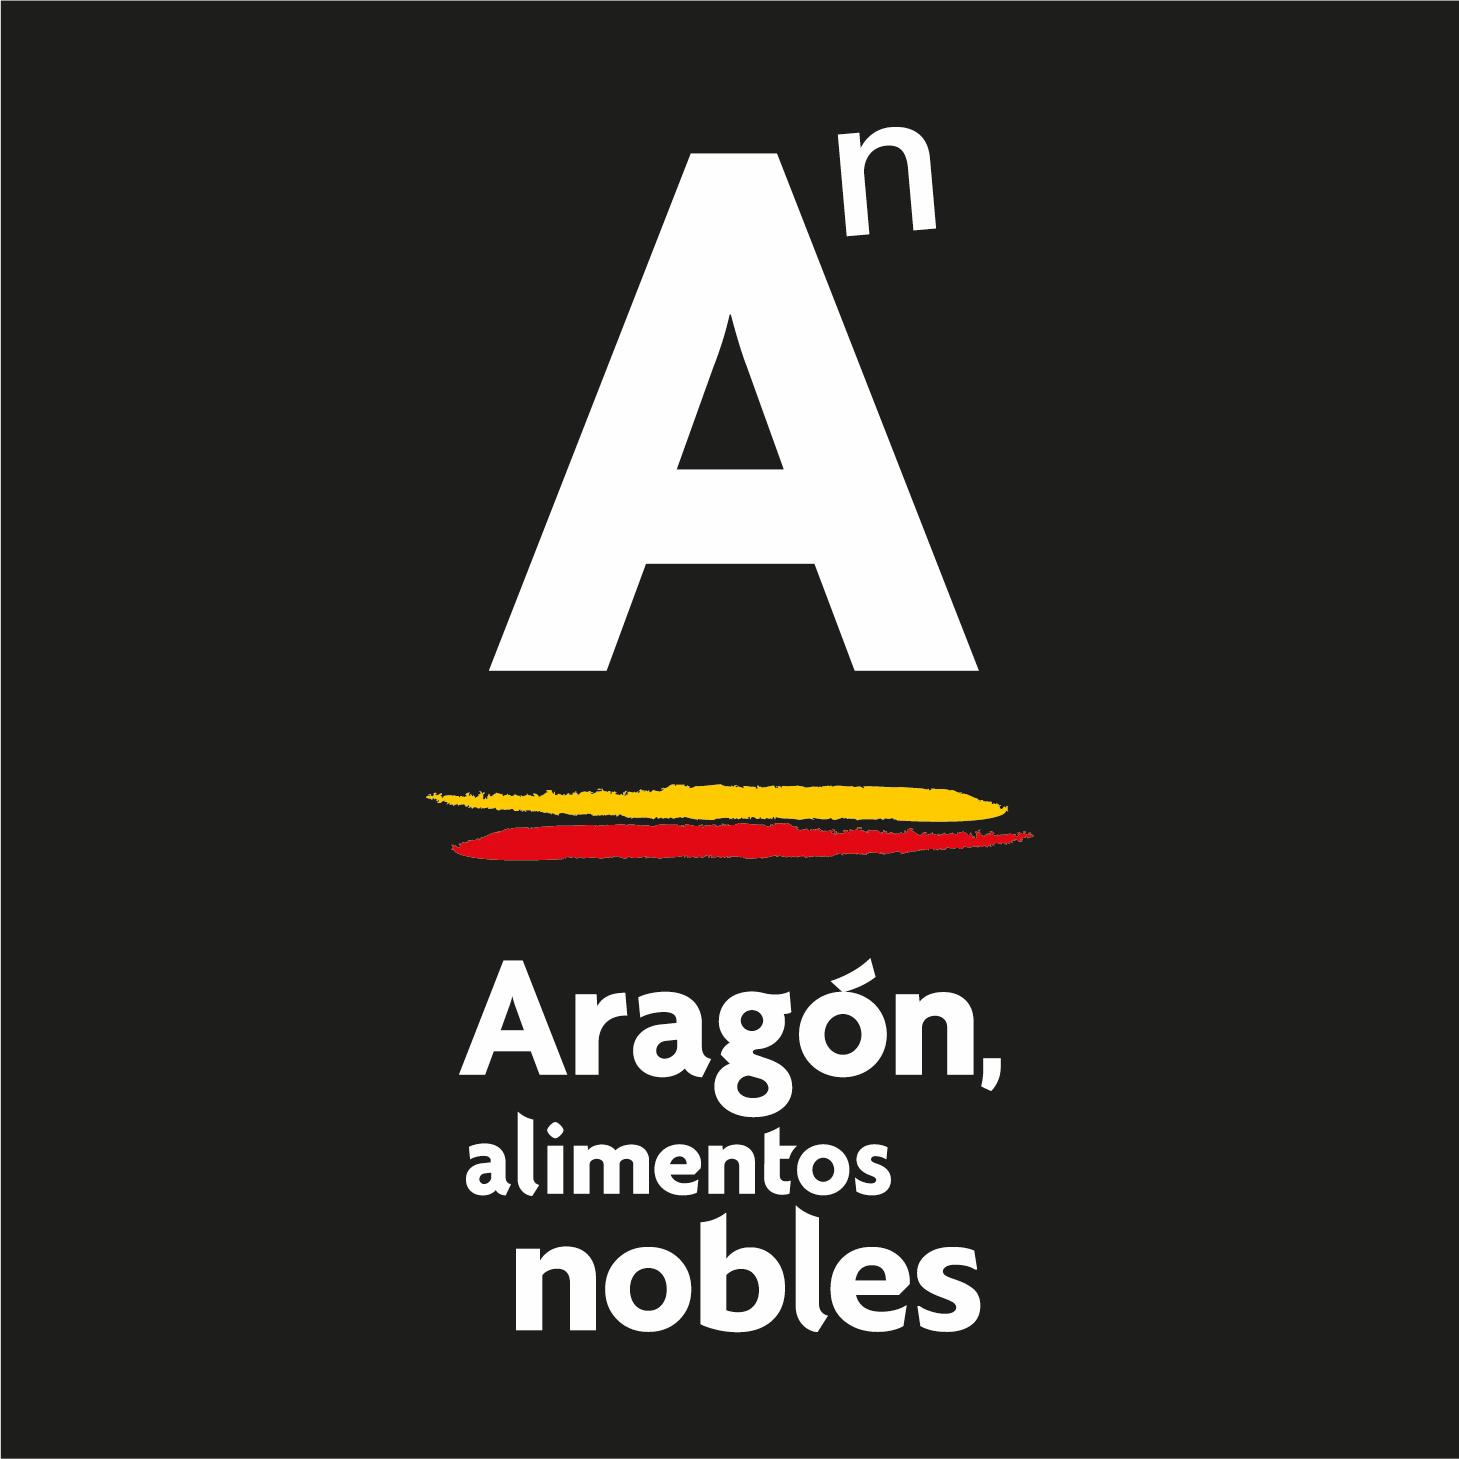 Aragón Alimentos nobles logos logo